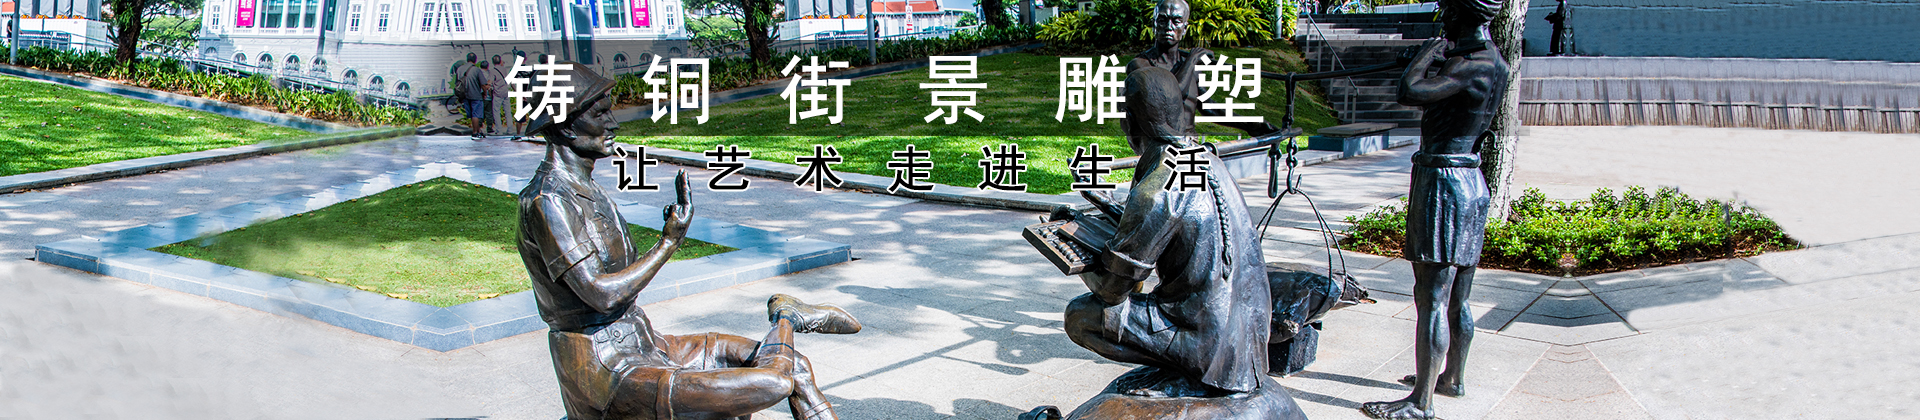 铸铜街景雕塑